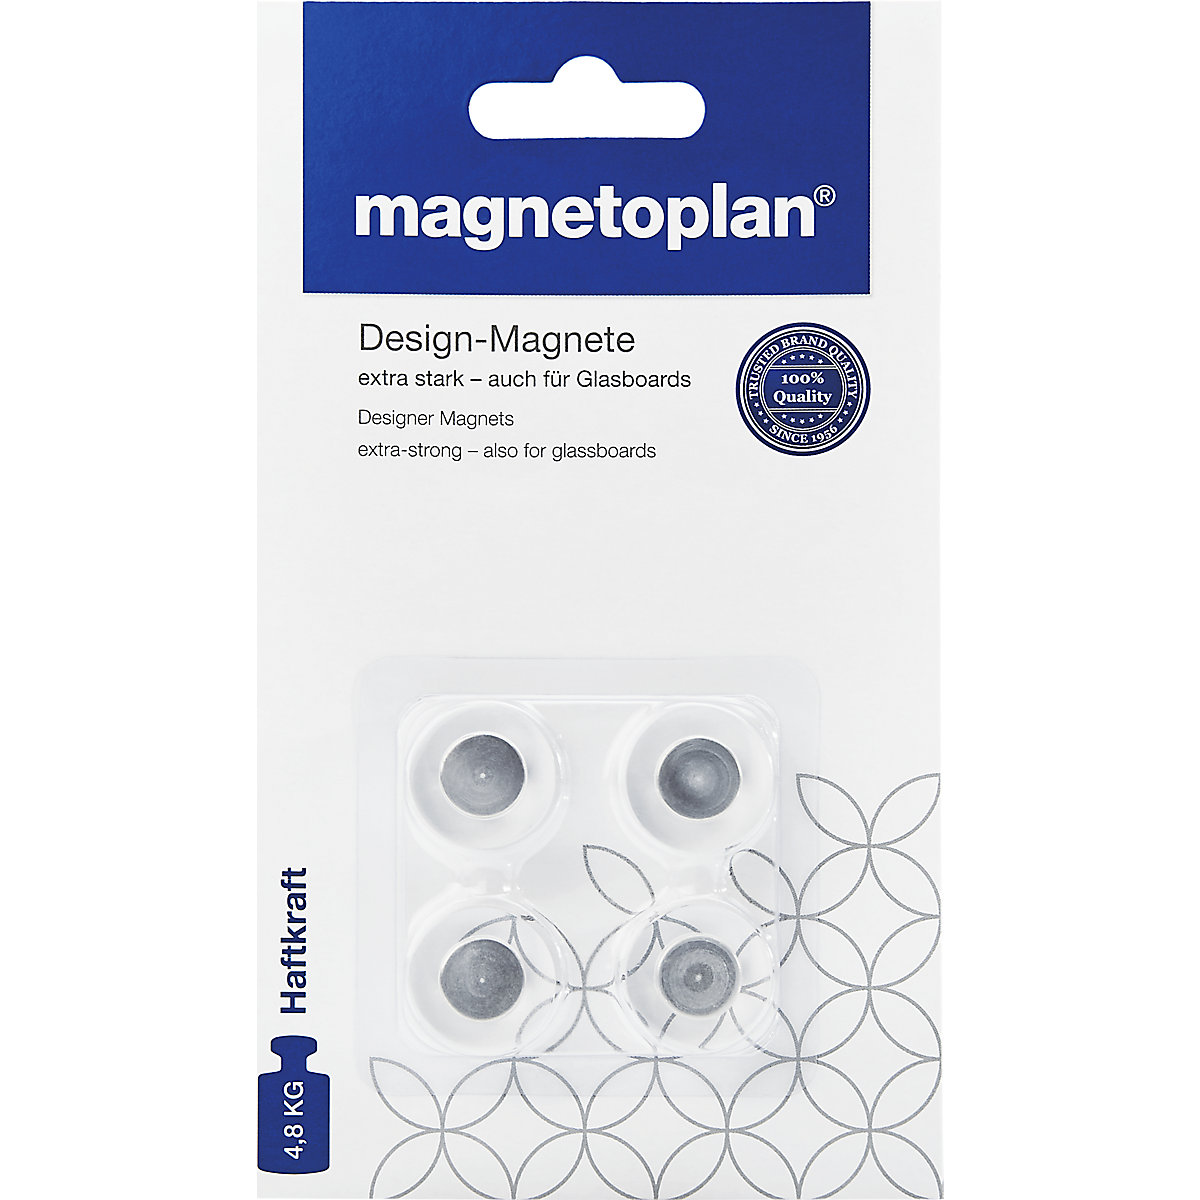 Lepo oblikovan magnet - magnetoplan